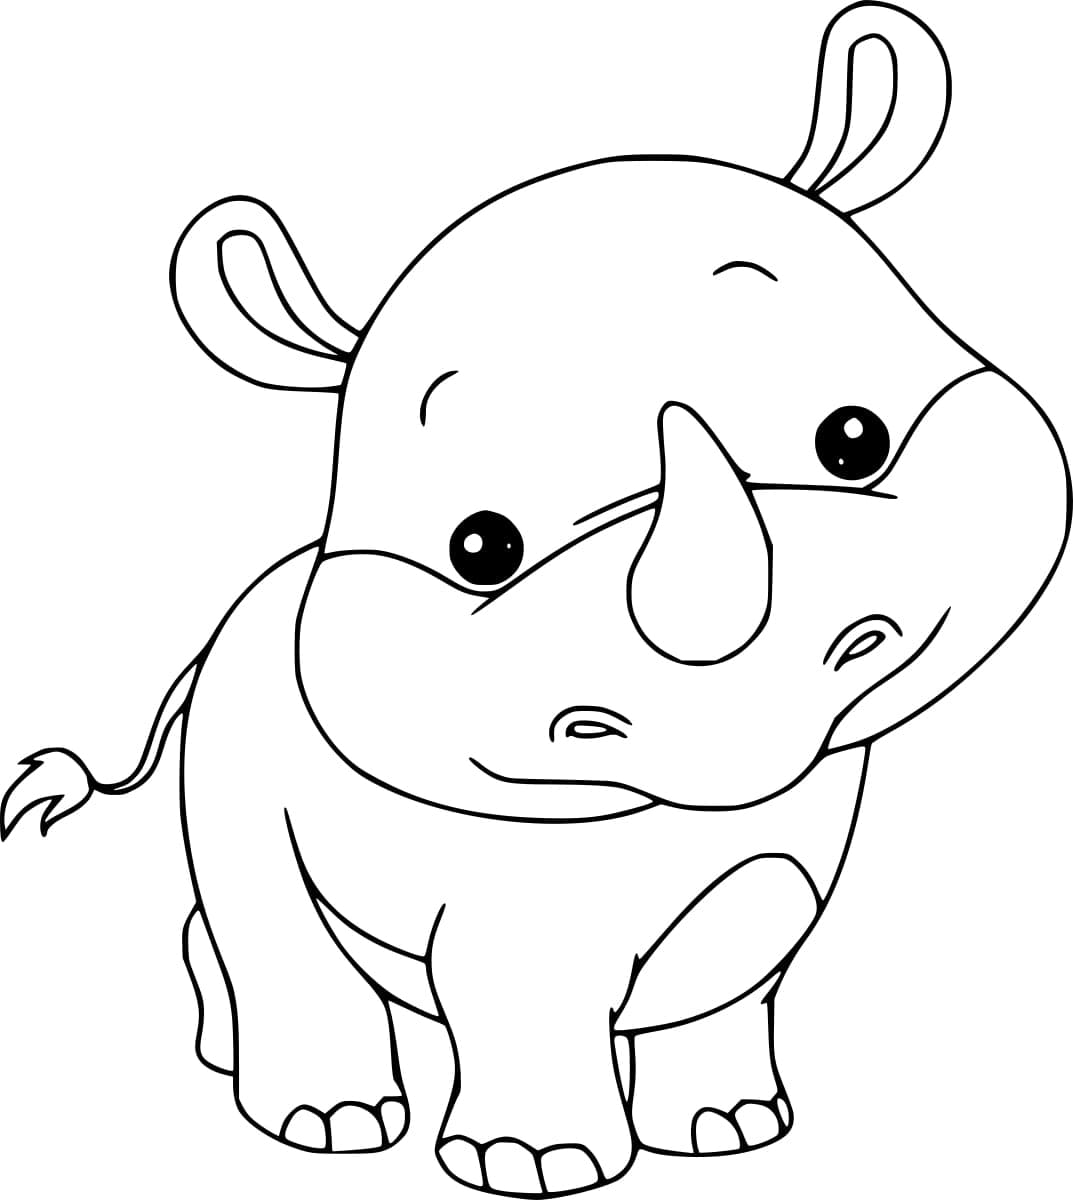 Rhinocéros Mignon coloring page